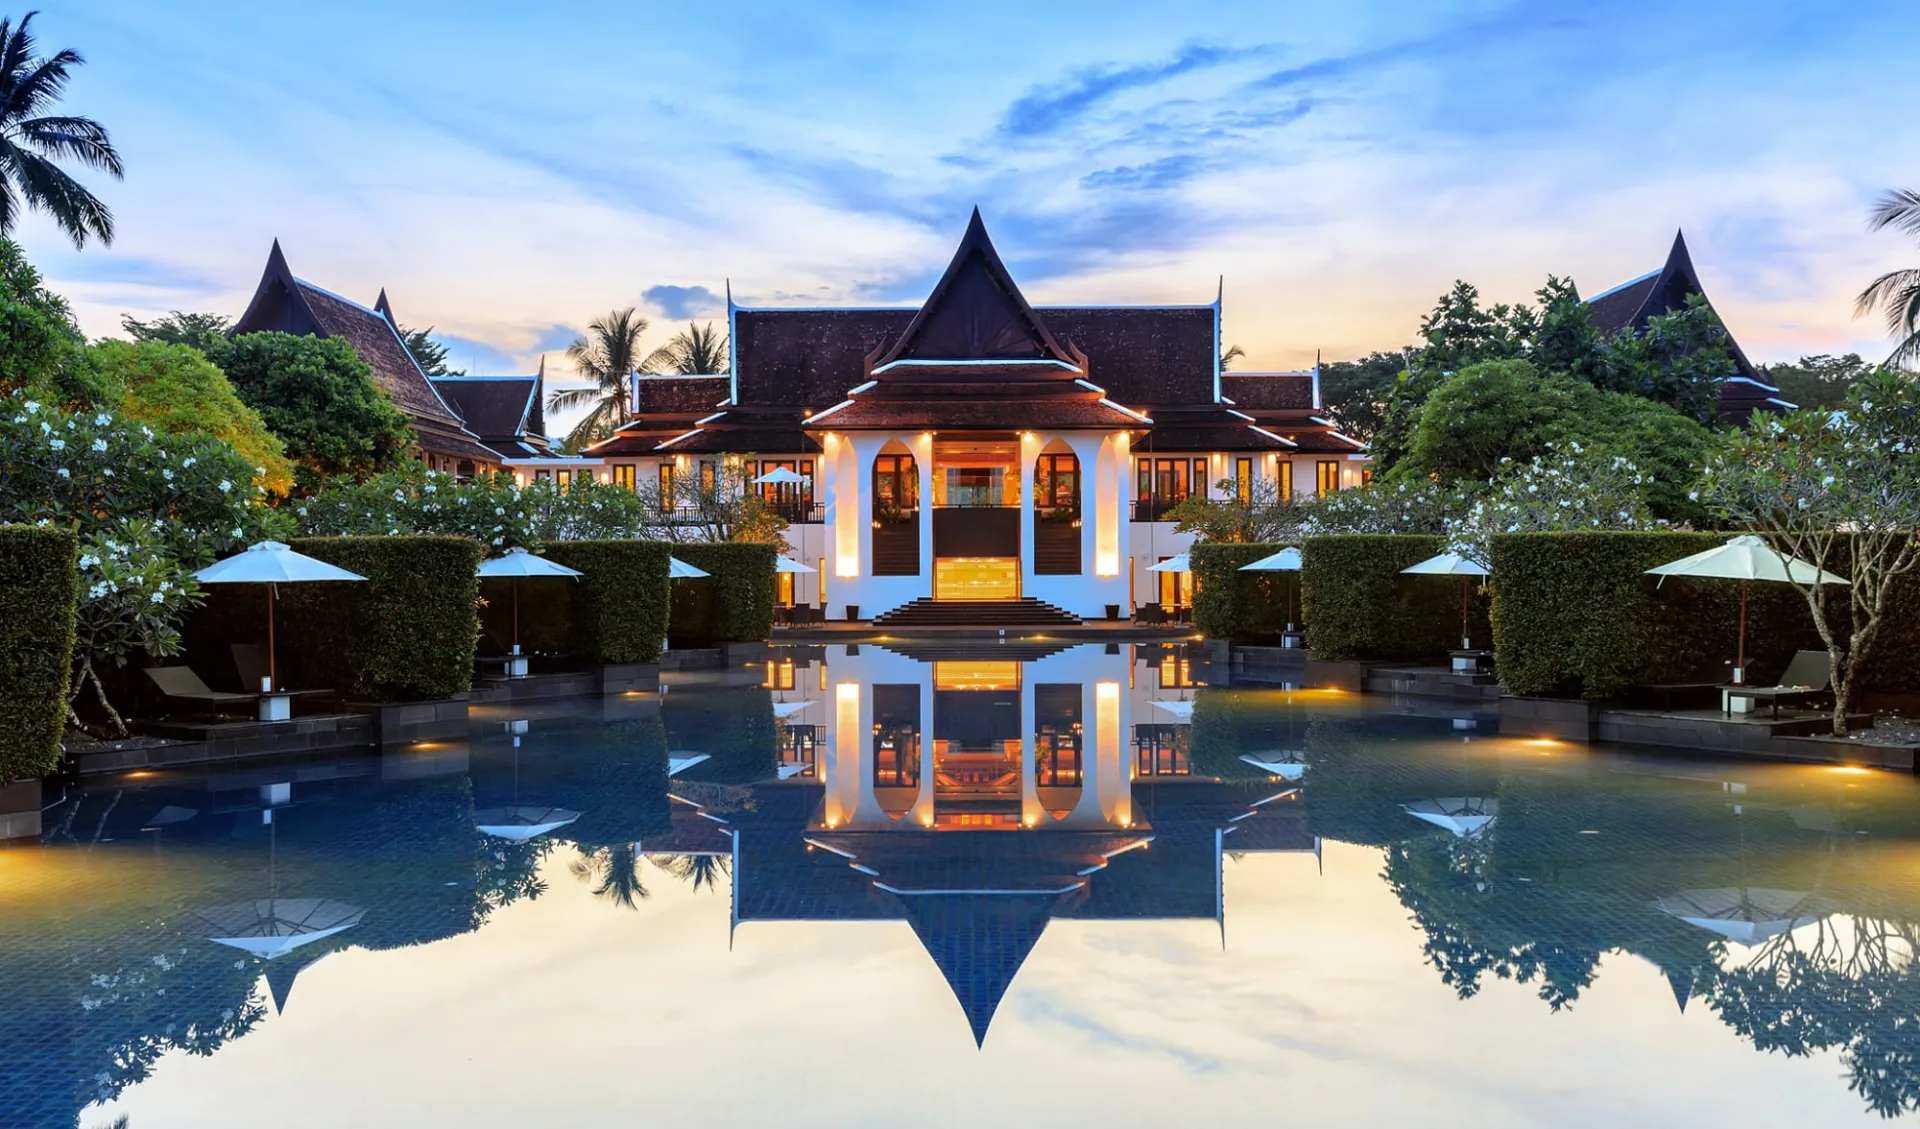 JW Marriott Khao Lak Resort & Spa: Pool area